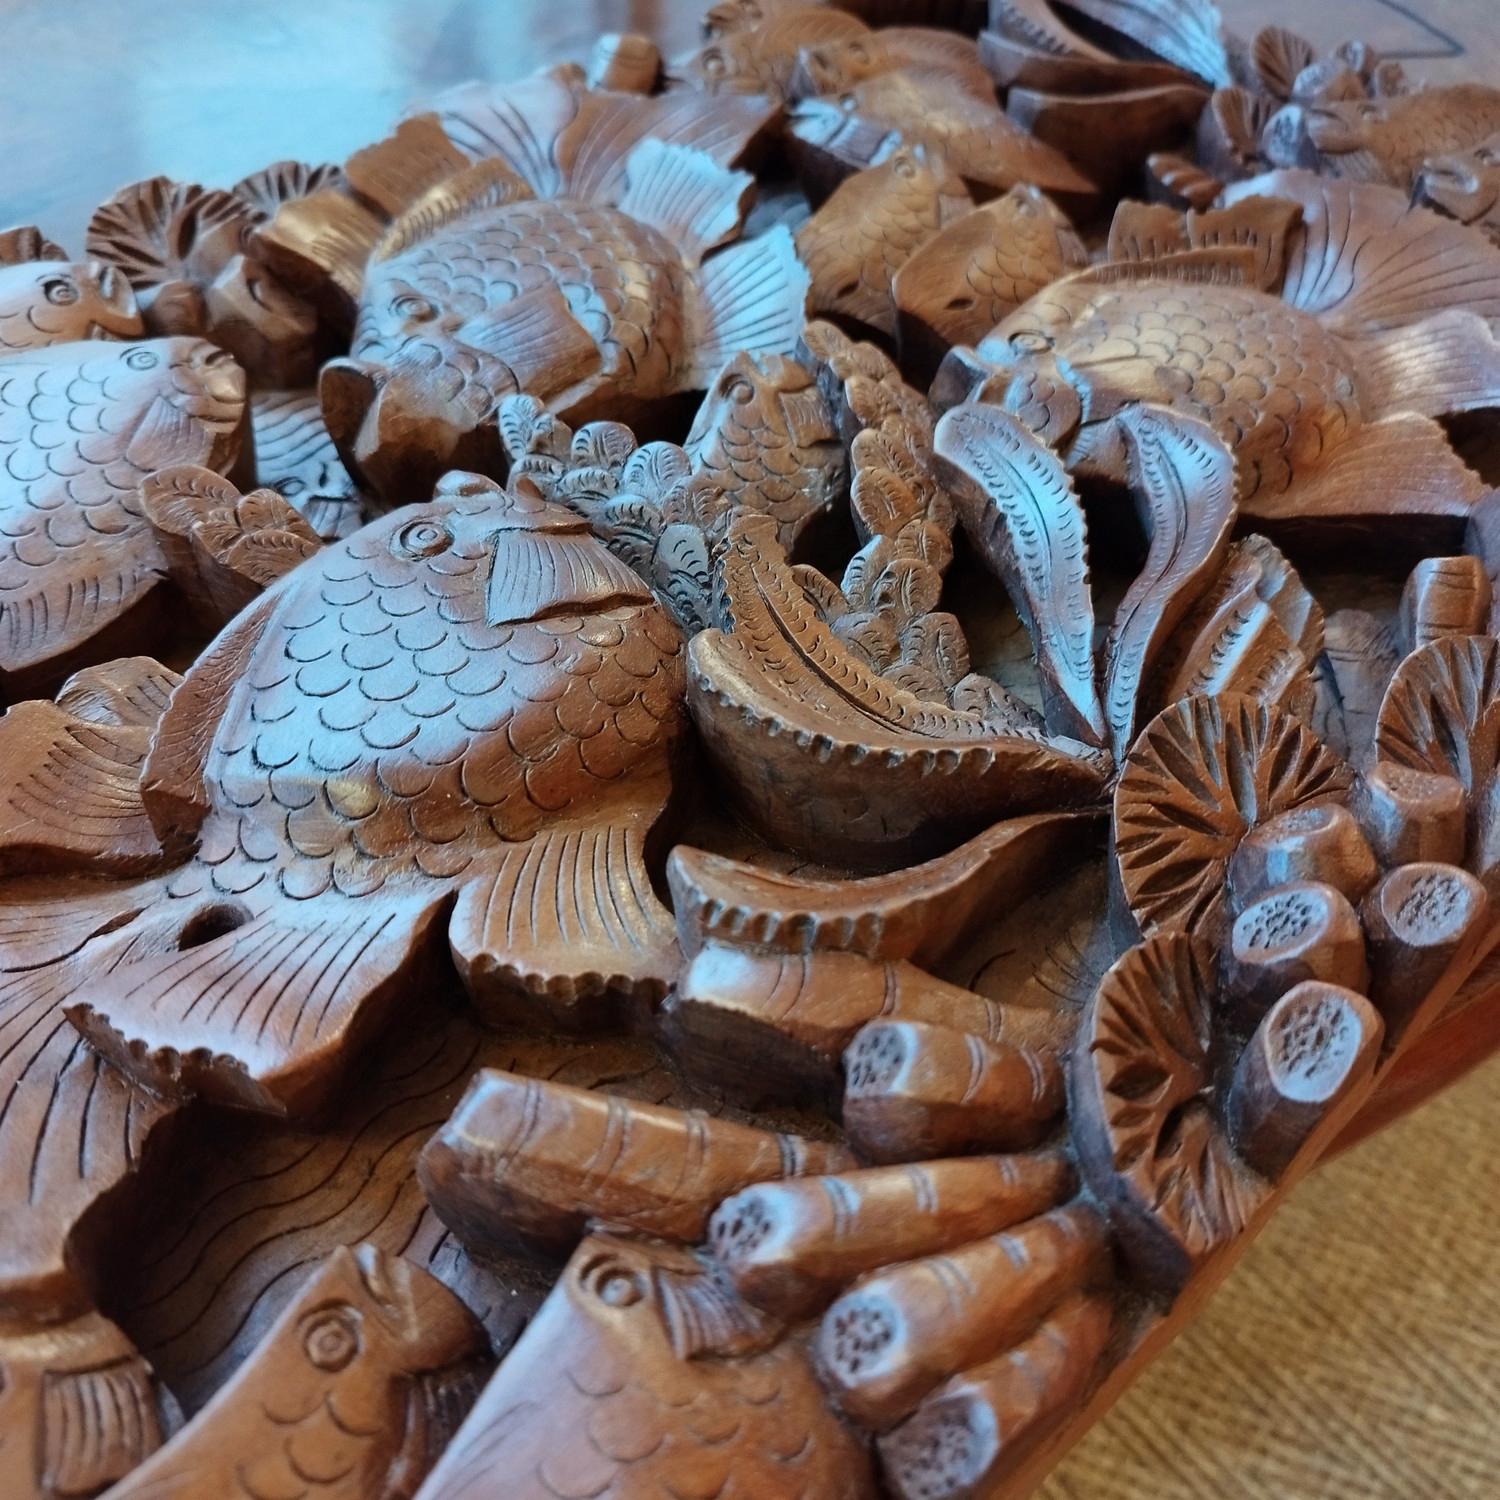 Tief geschnitzte Holztafel mit Fischdarstellung, vielleicht aus Vietnam. Die Handwerkskunst ist erstaunlich, sehr dekoratives Element.
Zögern Sie nicht, mich für ein Versandangebot zu kontaktieren.